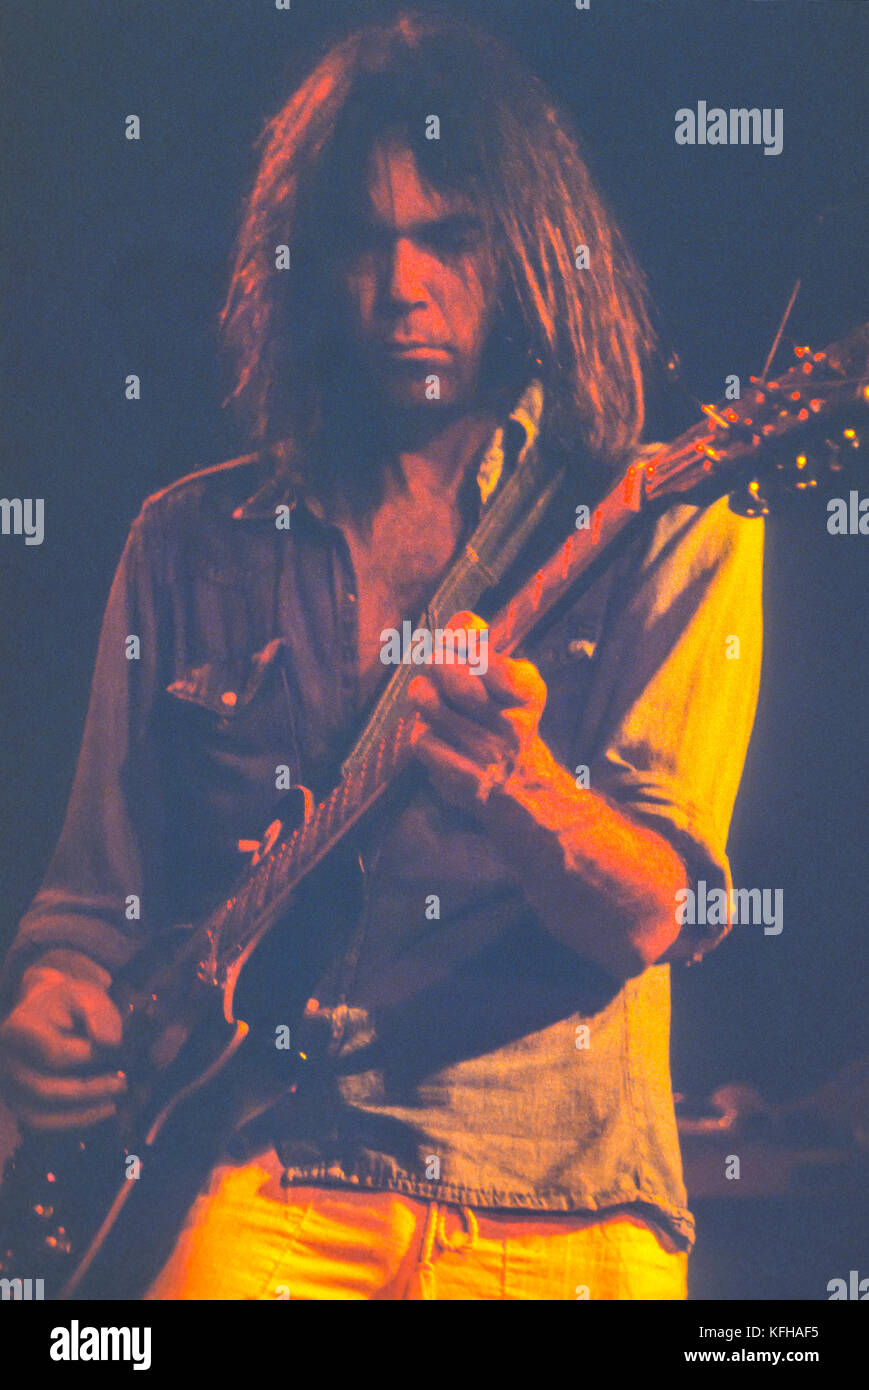 Santa cruz, Californie, USA - musicien Neil Young joue avec les canards, au catalyseur de nuit. août 1977 Banque D'Images